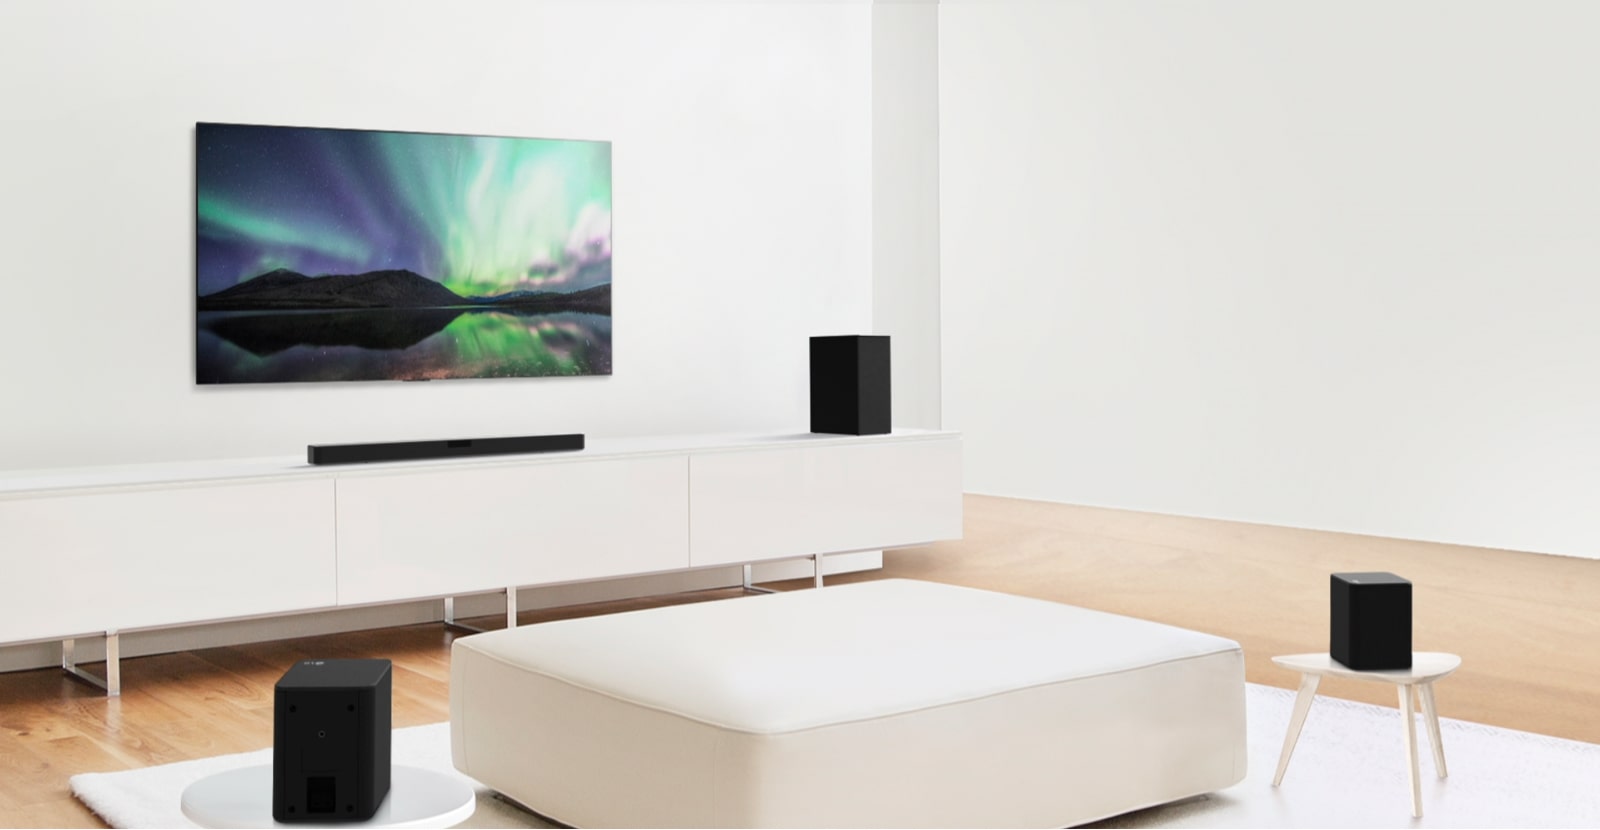 Videoukážka znázorňujúca LG Sound Bar v bielej obývačke s 5.1-kanálovou konfiguráciou.